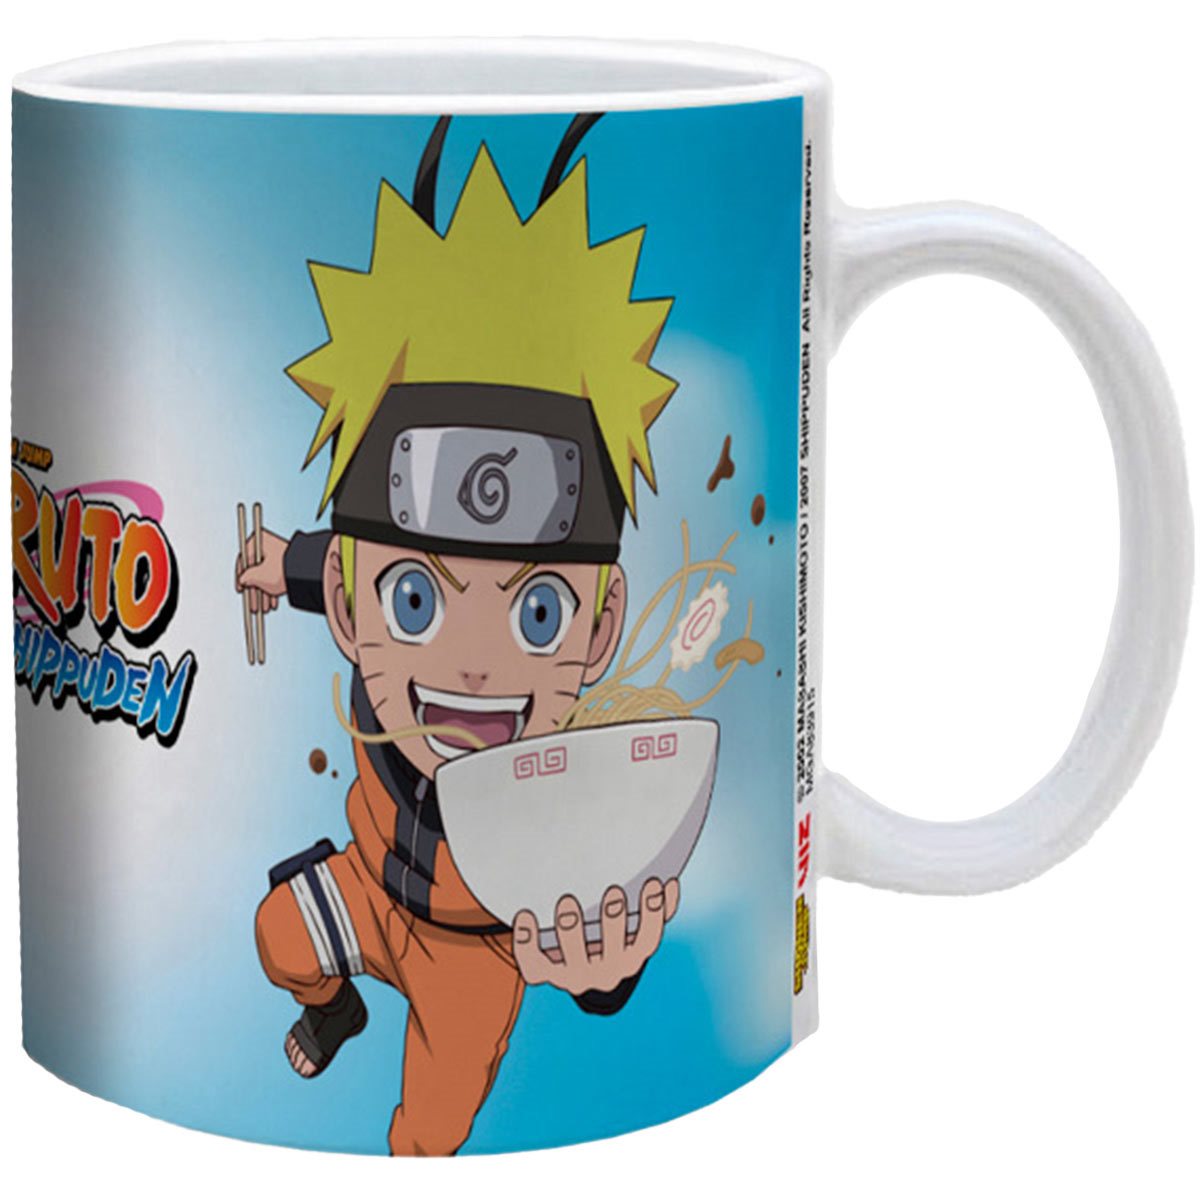 Il Covo del Nerd  Naruto - Tazza / Mug 320ml - Naruto Run